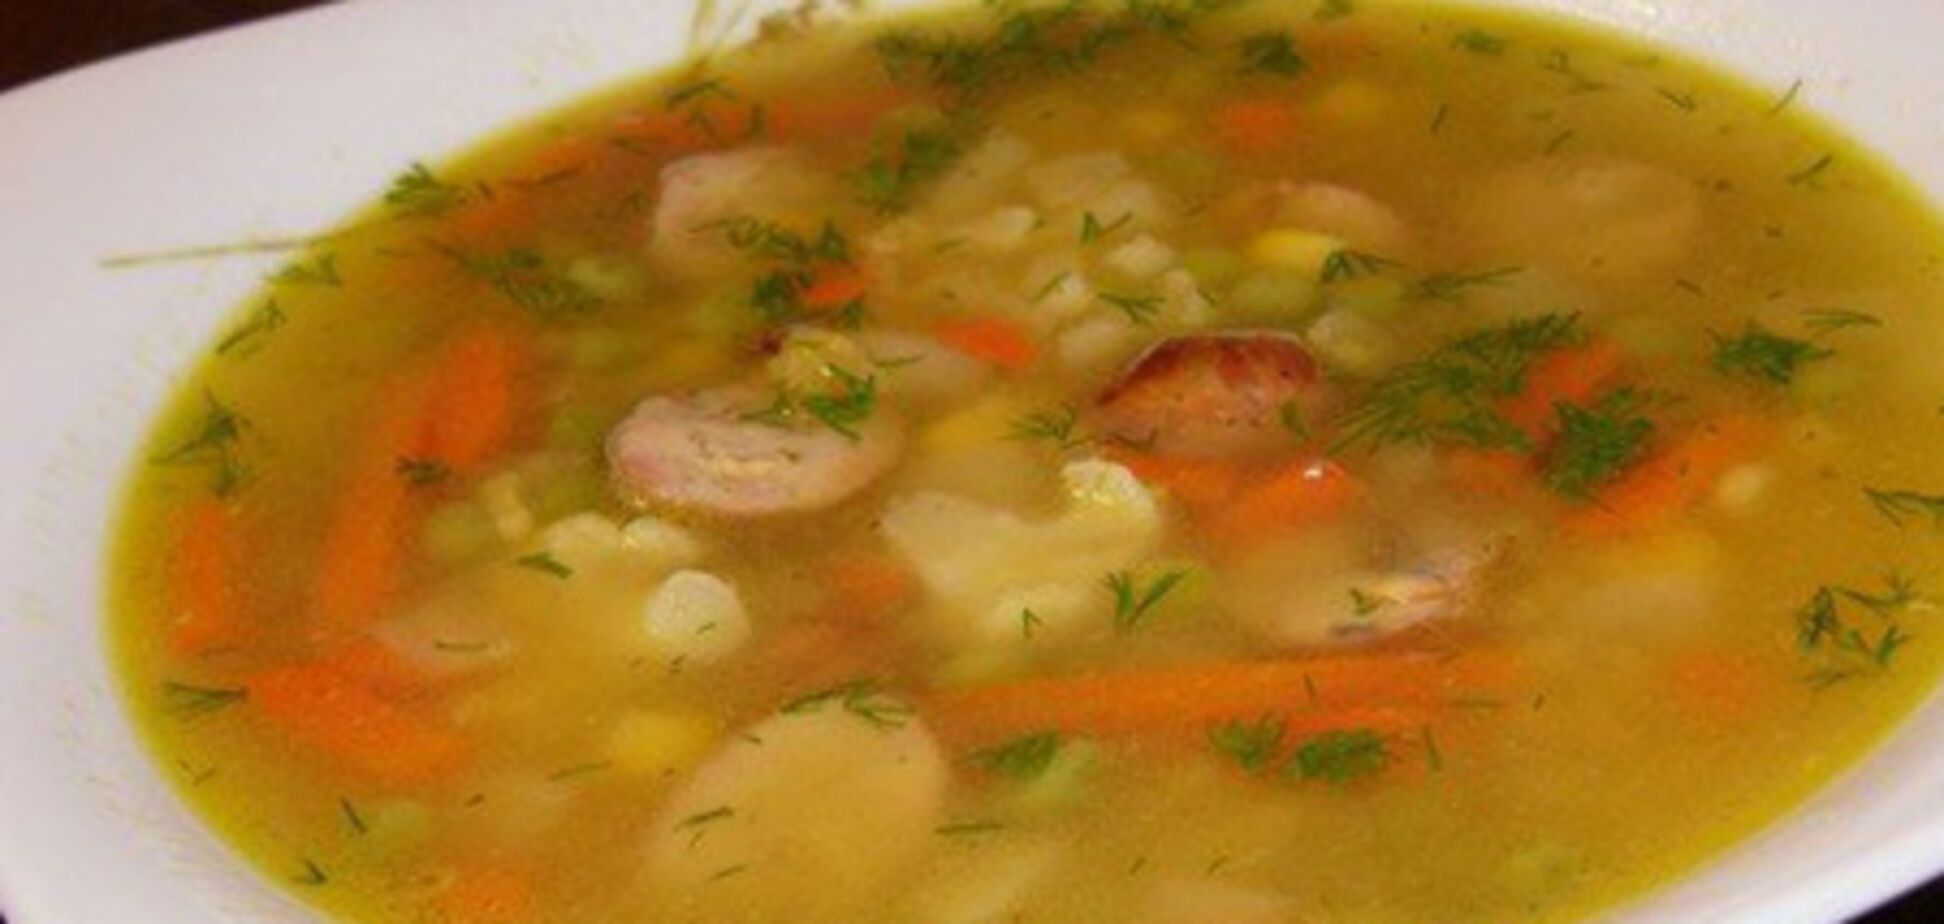 Польский суп гороховый с колбасой